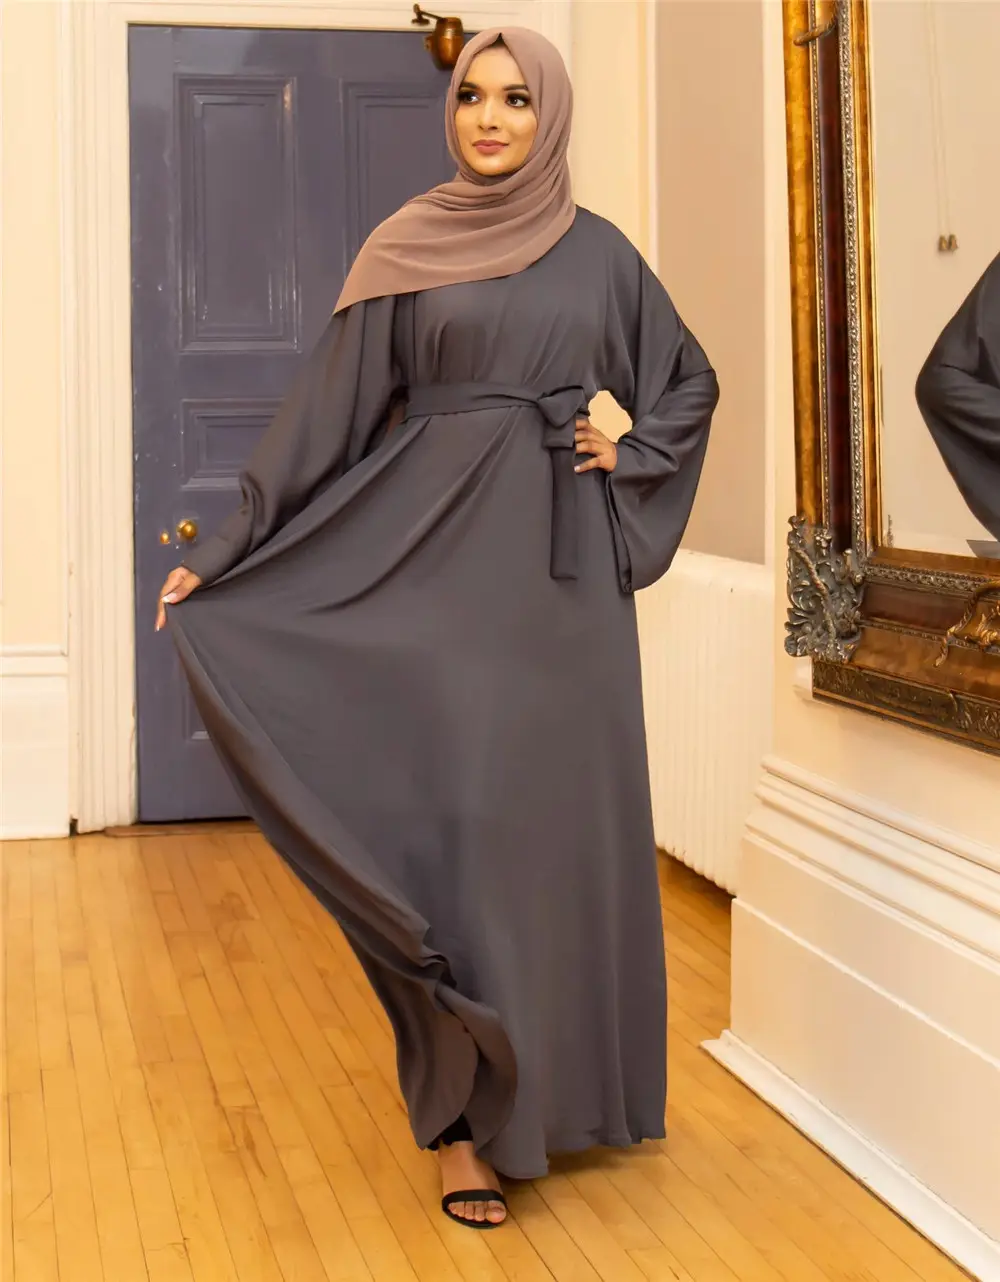 Igh qualidade modesta roupas islâmicas simples nida bordado vestido baju kurung e baju melayu muçulmano vestido islâmico c China fábrica